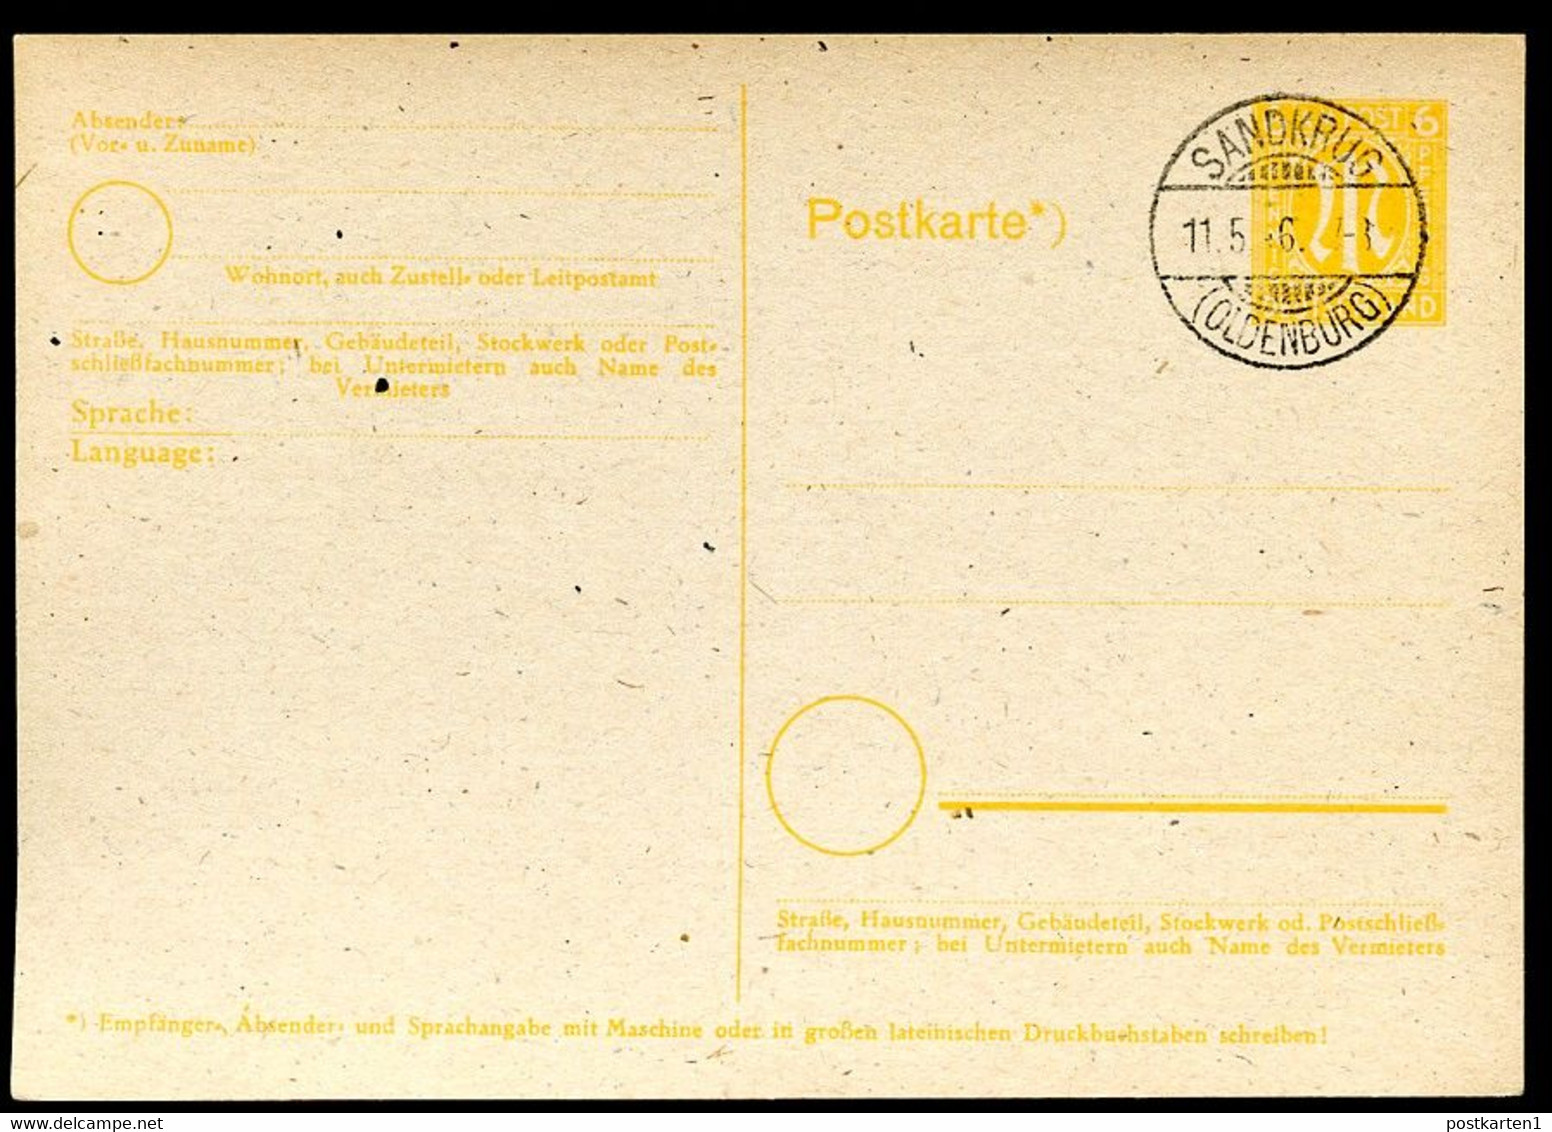 BRITISCHE ZONE P 905 Postkarte Sandkrug (Hatten) 11.5.1946 - Emissions Provisoires Zone Britannique